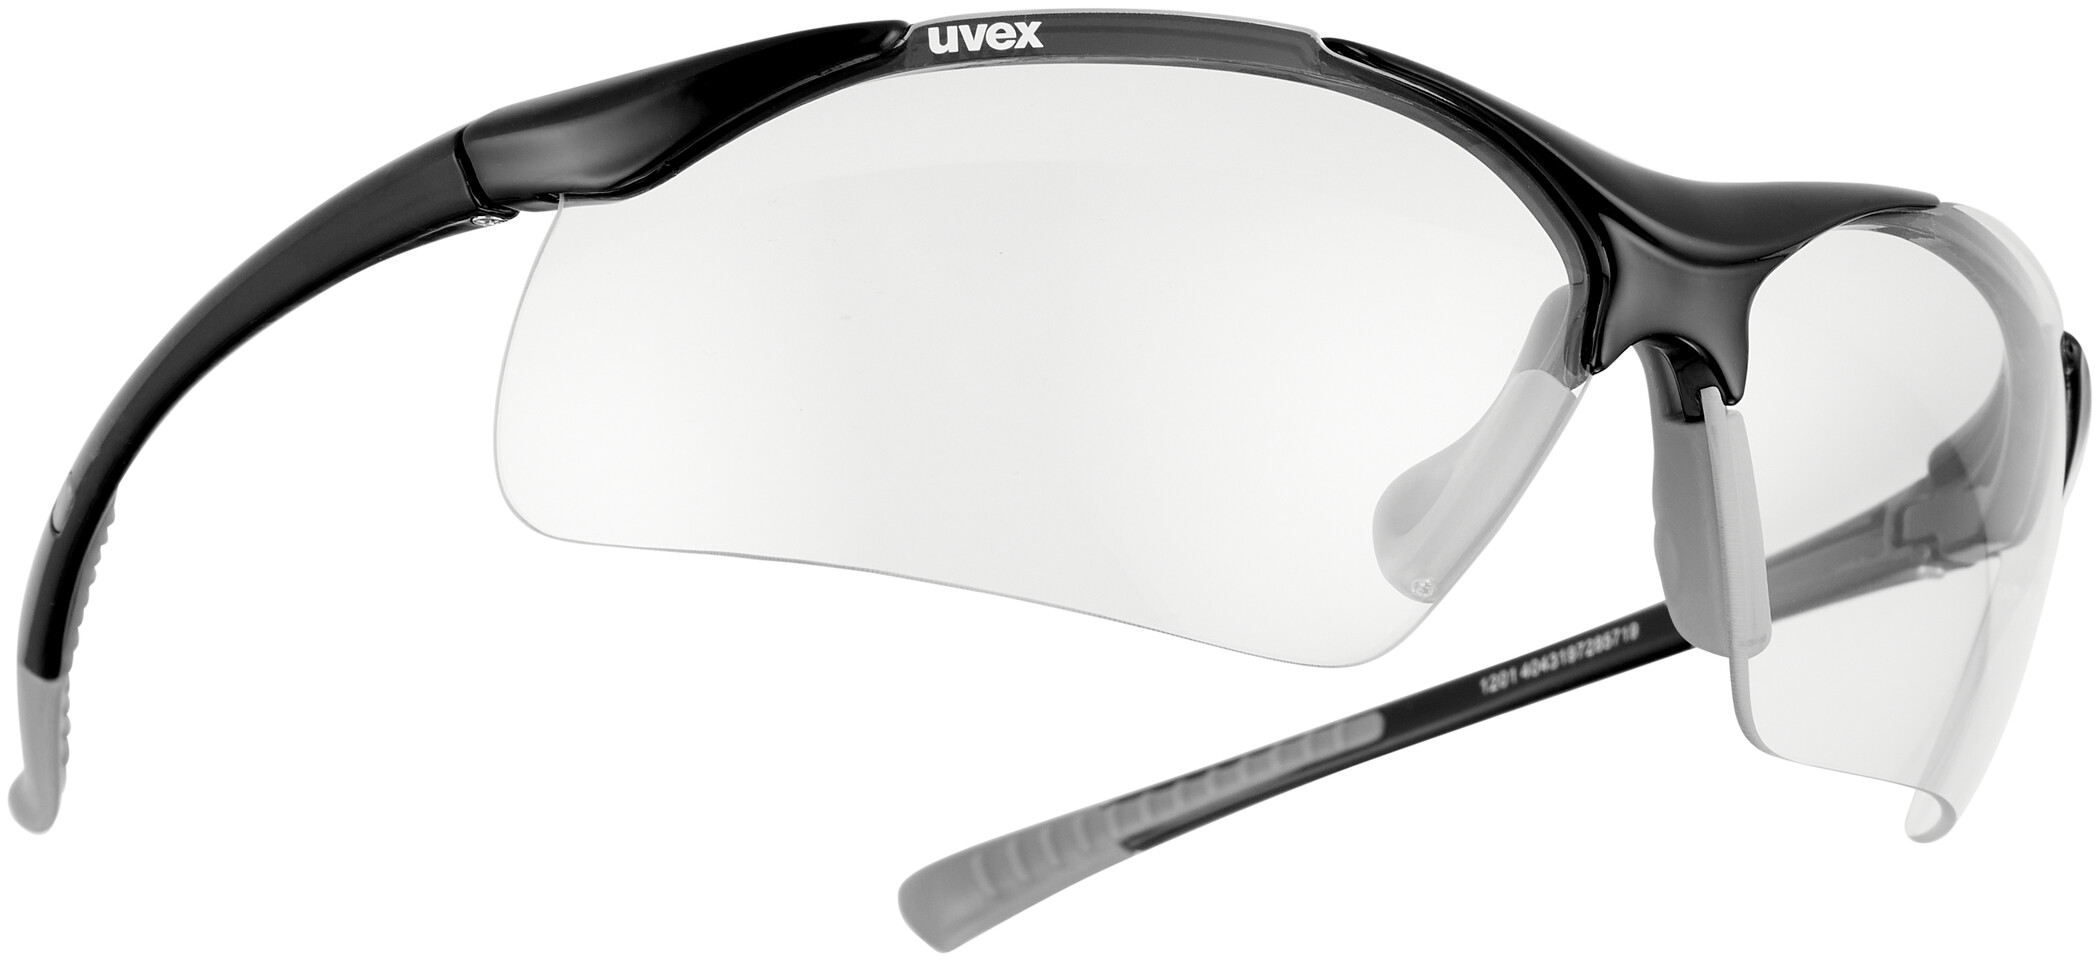 UVEX sportstyle 223 white Sonnen Brille Fahrrad Bike Rad Sportbrille Weiß NEU 